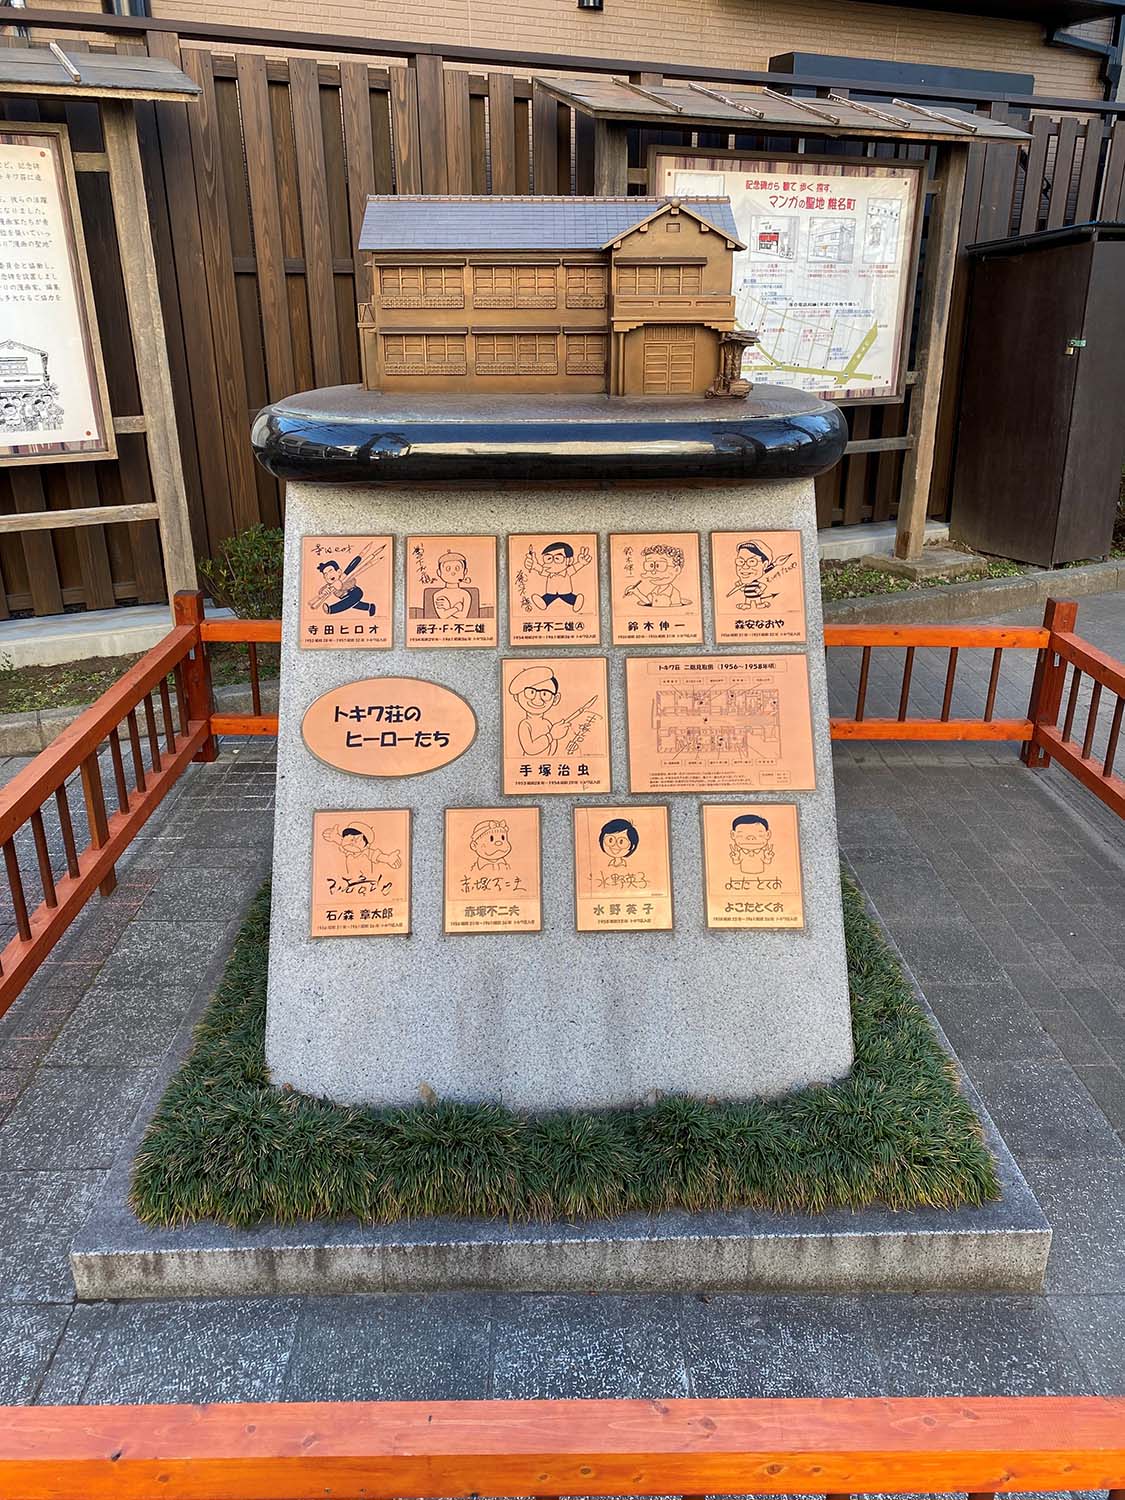 トキワ荘マンガミュージアムの入り口にある記念碑「トキワ荘のヒーローたち」。平成21年（2009）、ミュージアム建設の構想がもちあがる前に作られ、東長崎＝マンガの街という認知度を高めることにつながった。